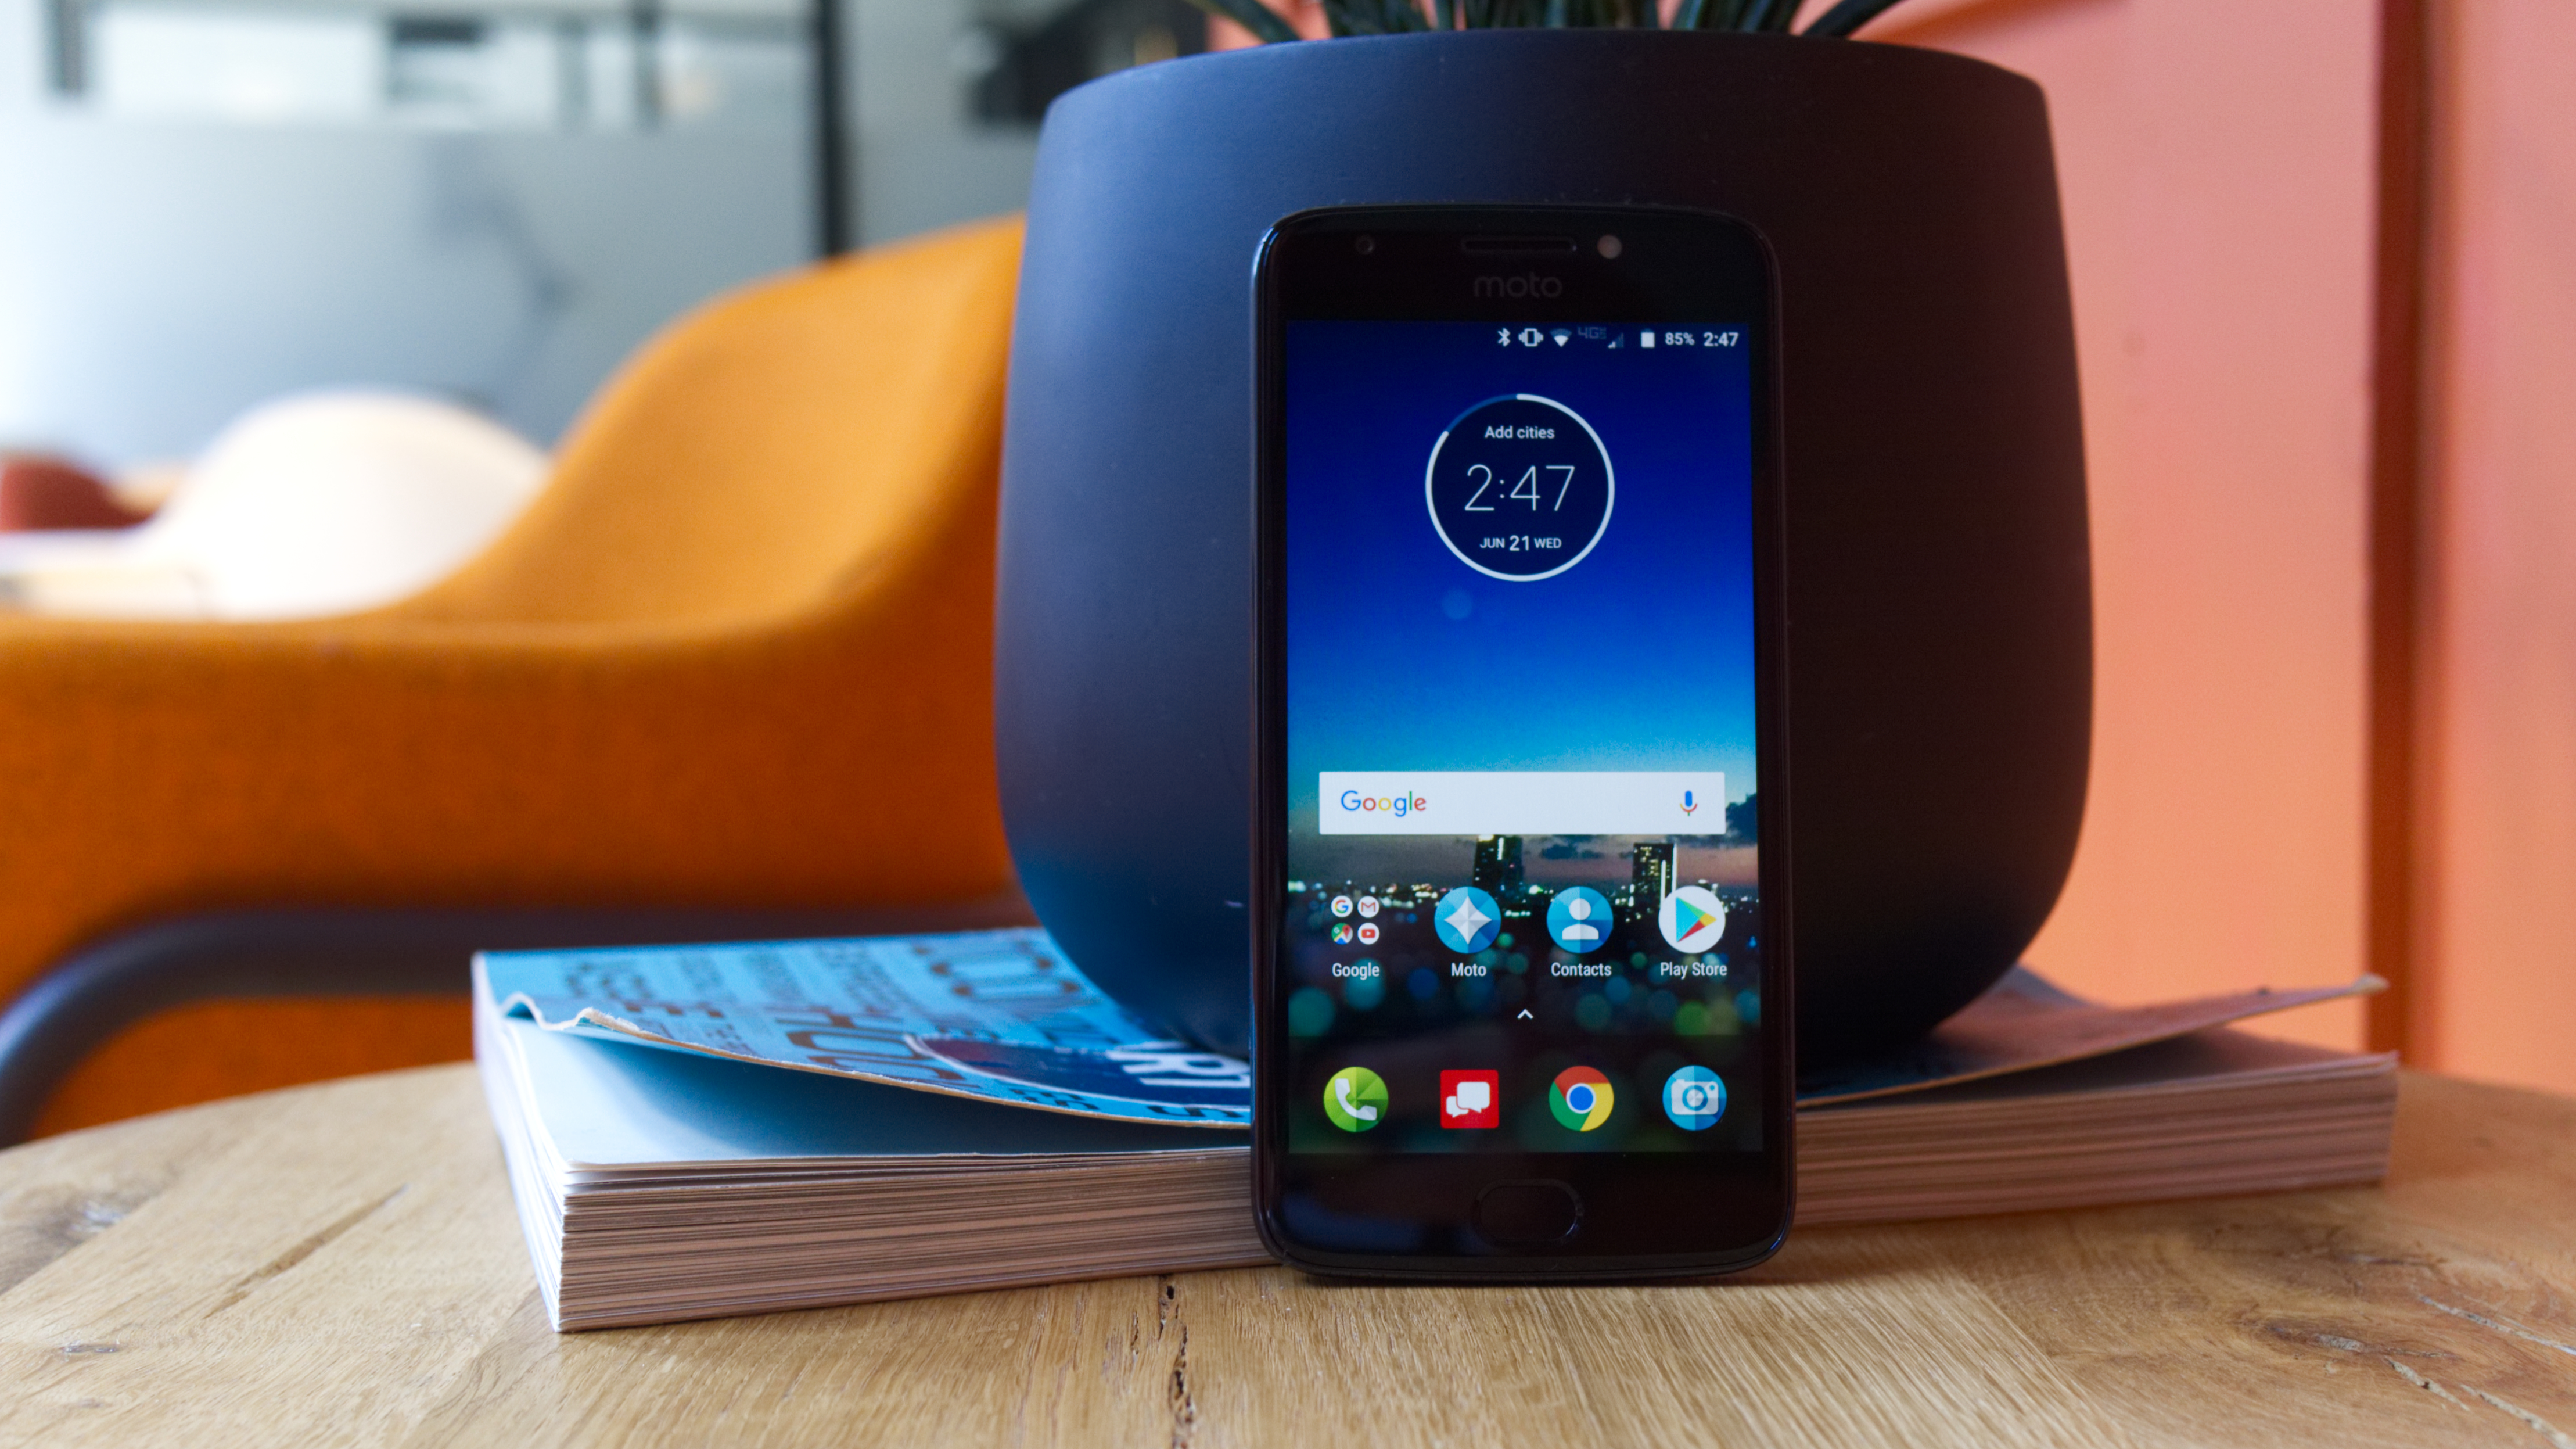 Motorola Moto E4 Plus Smartphone Review -  Reviews